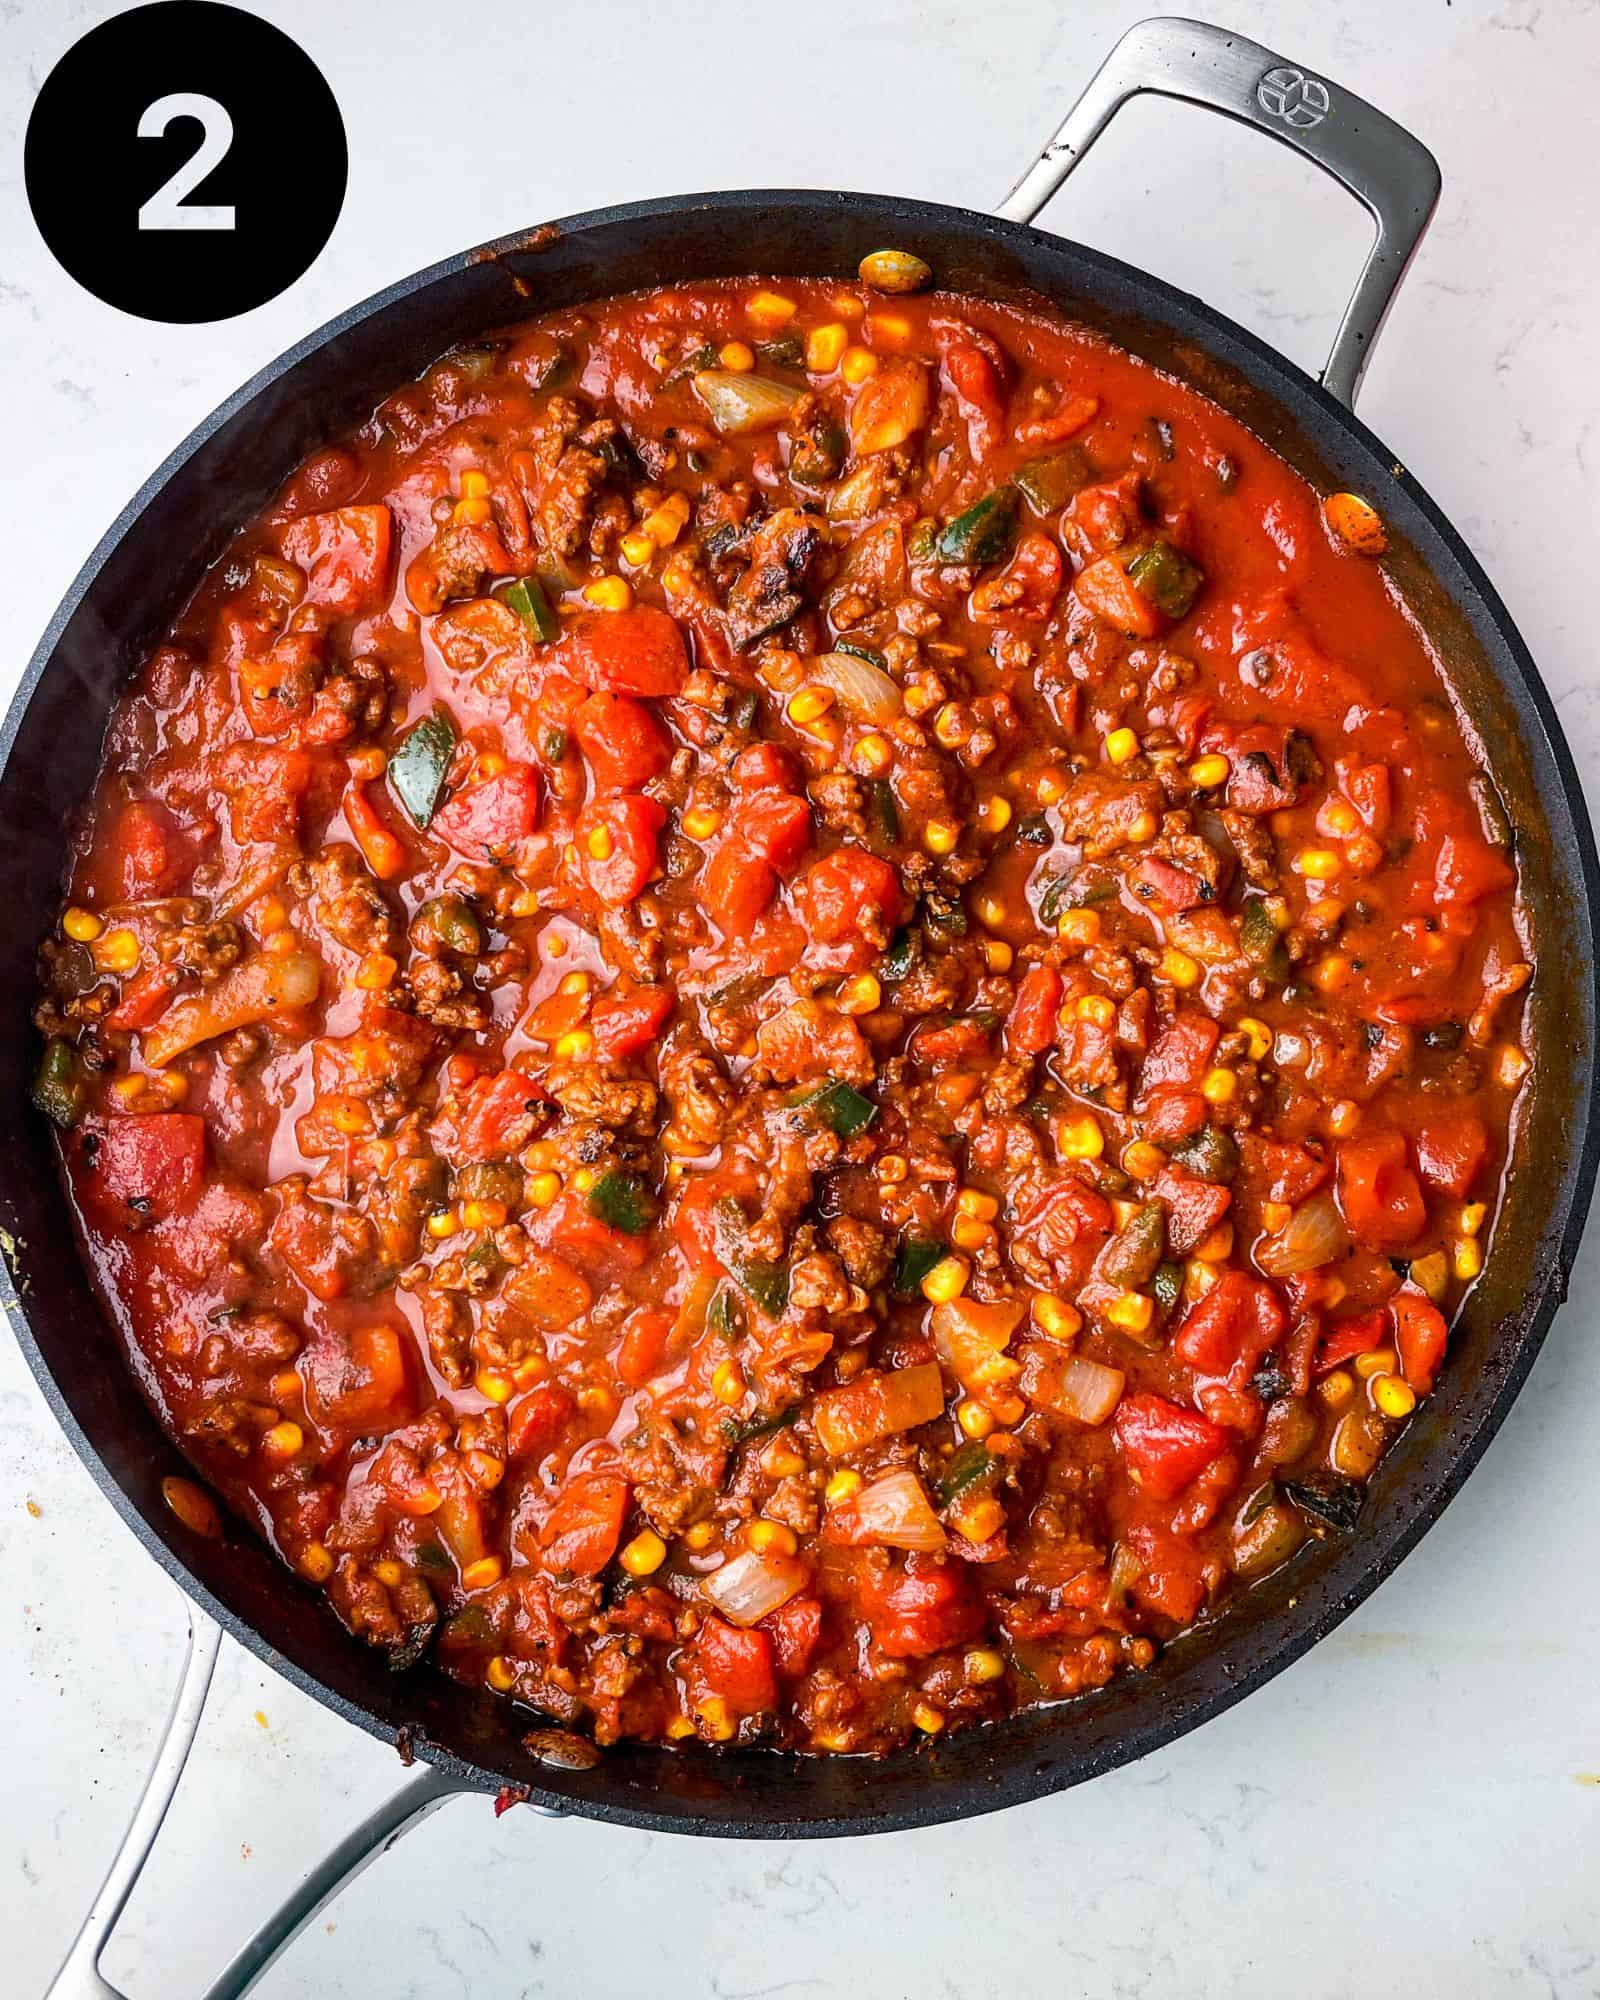 spaghetti sauce in a large pan.